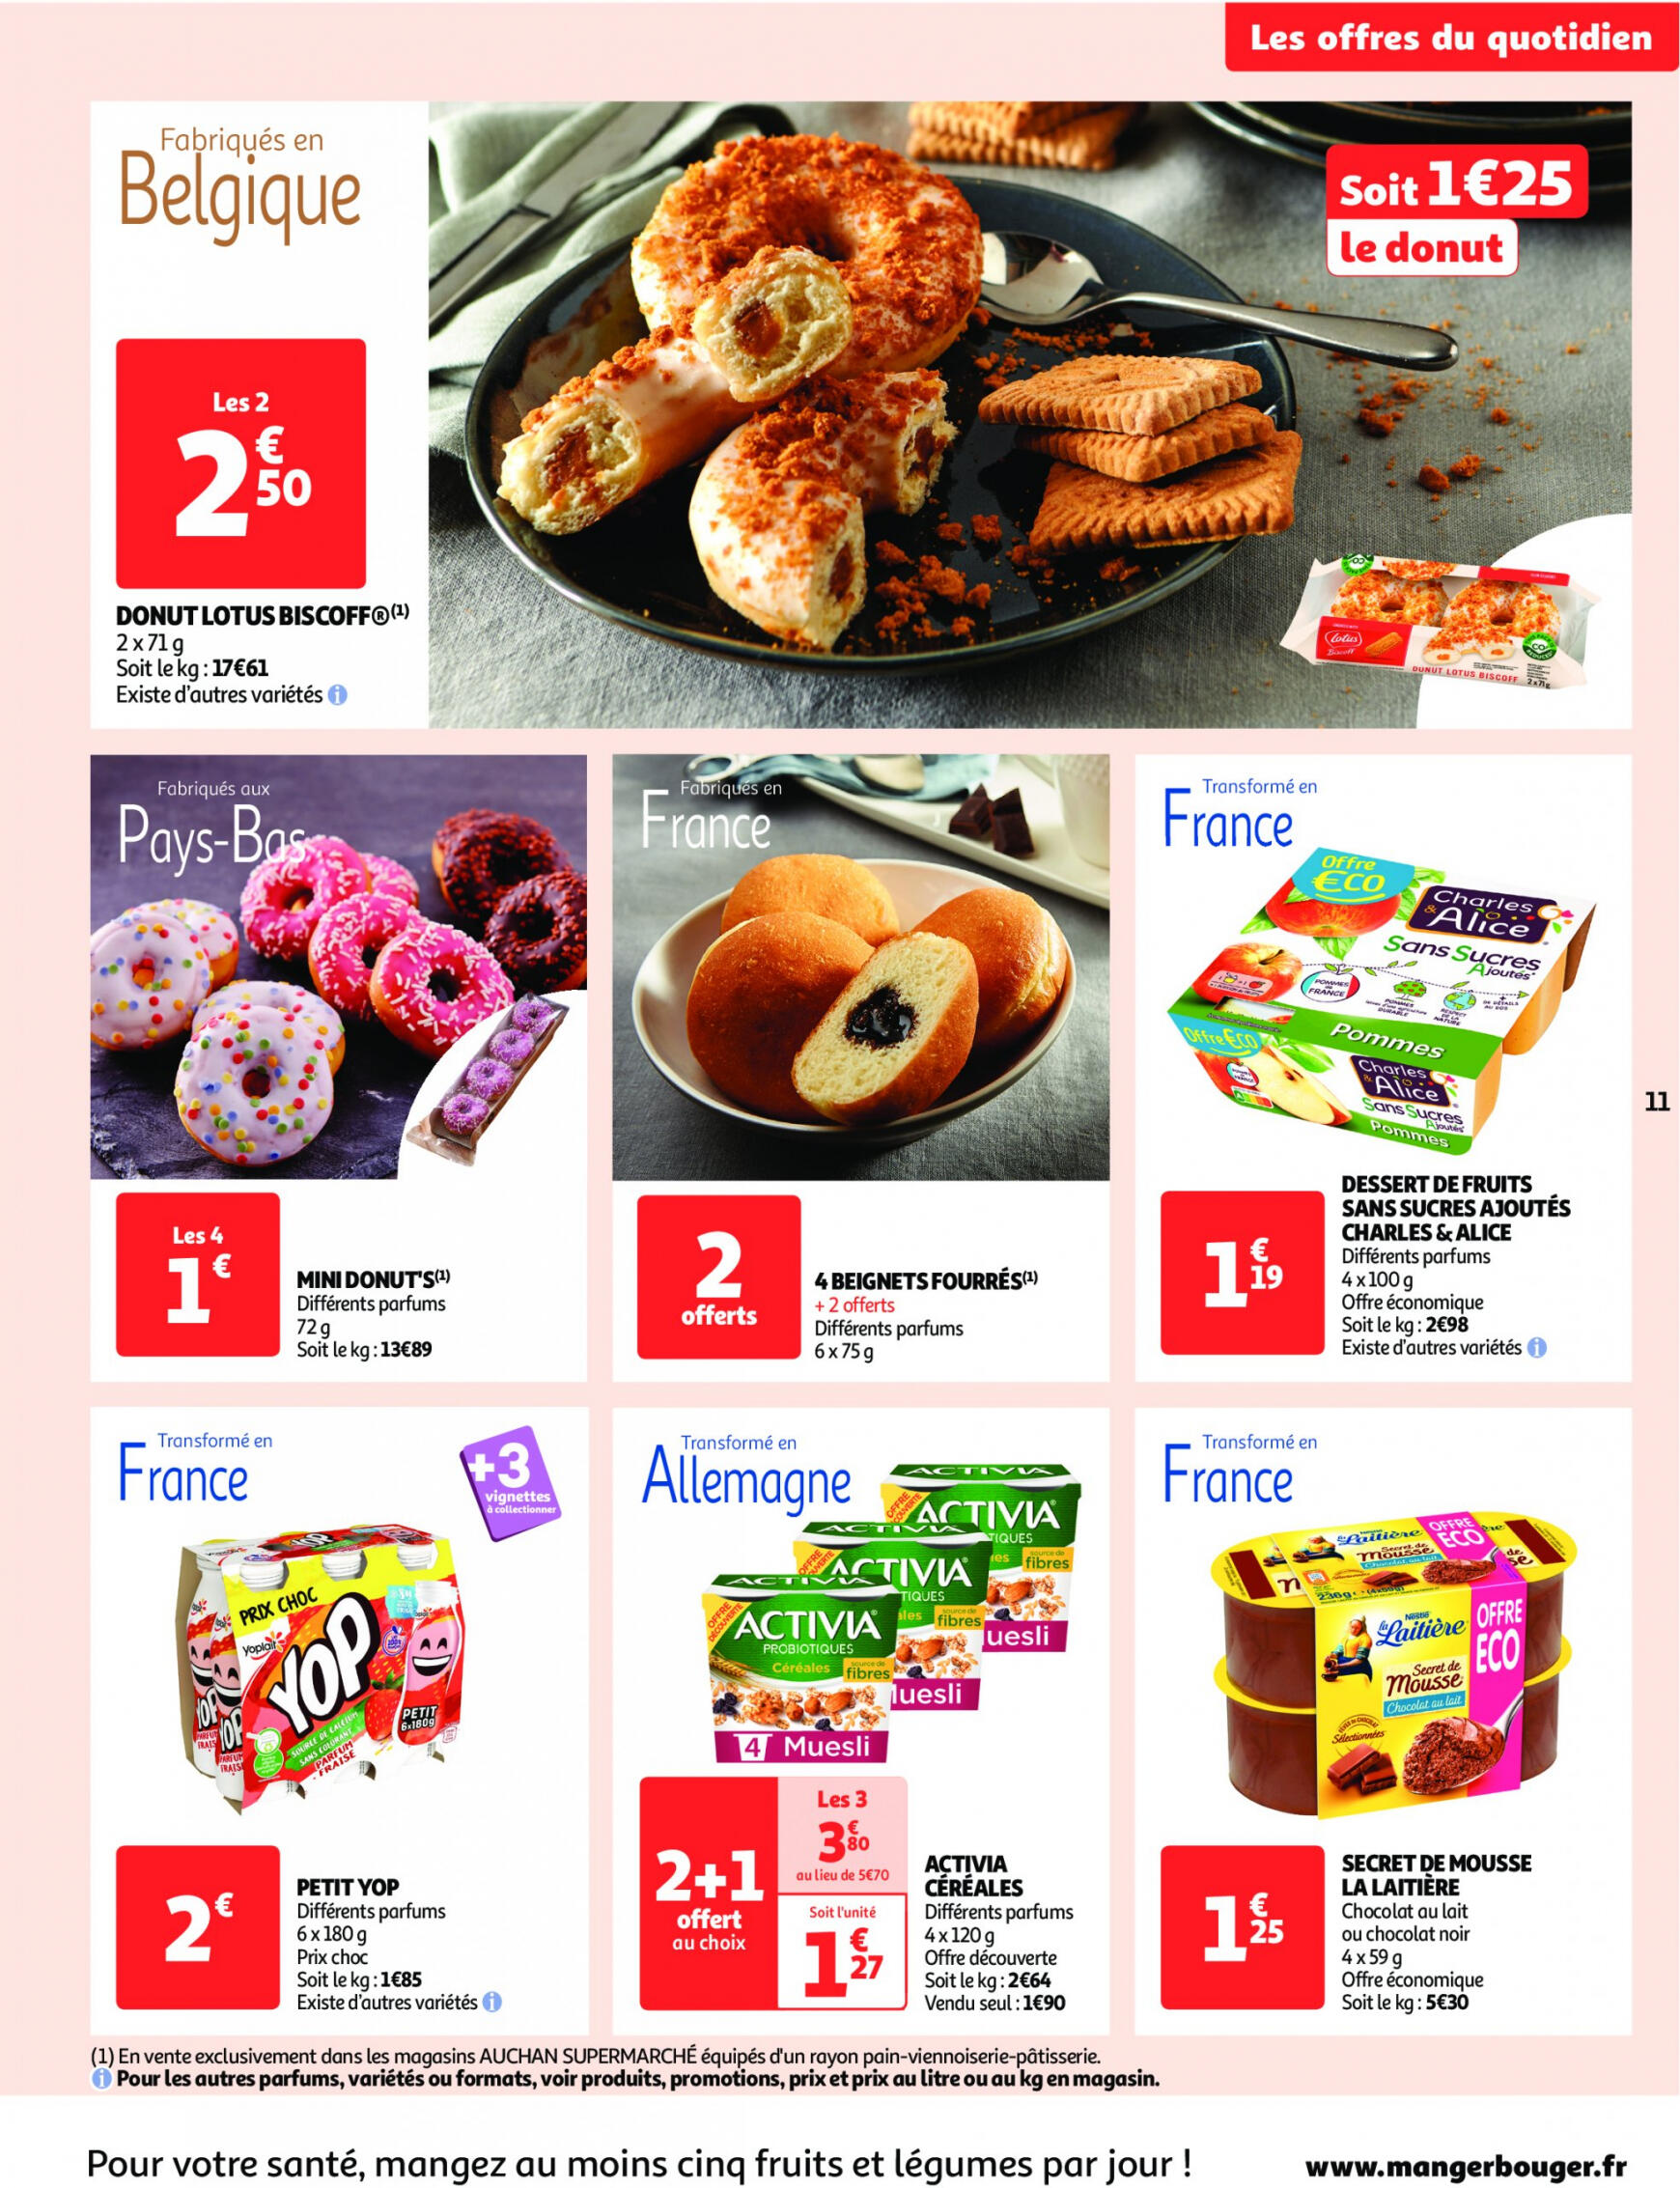 auchan - Auchan - On met le turbot sur les produits de la mer folder huidig 14.05. - 19.05. - page: 11